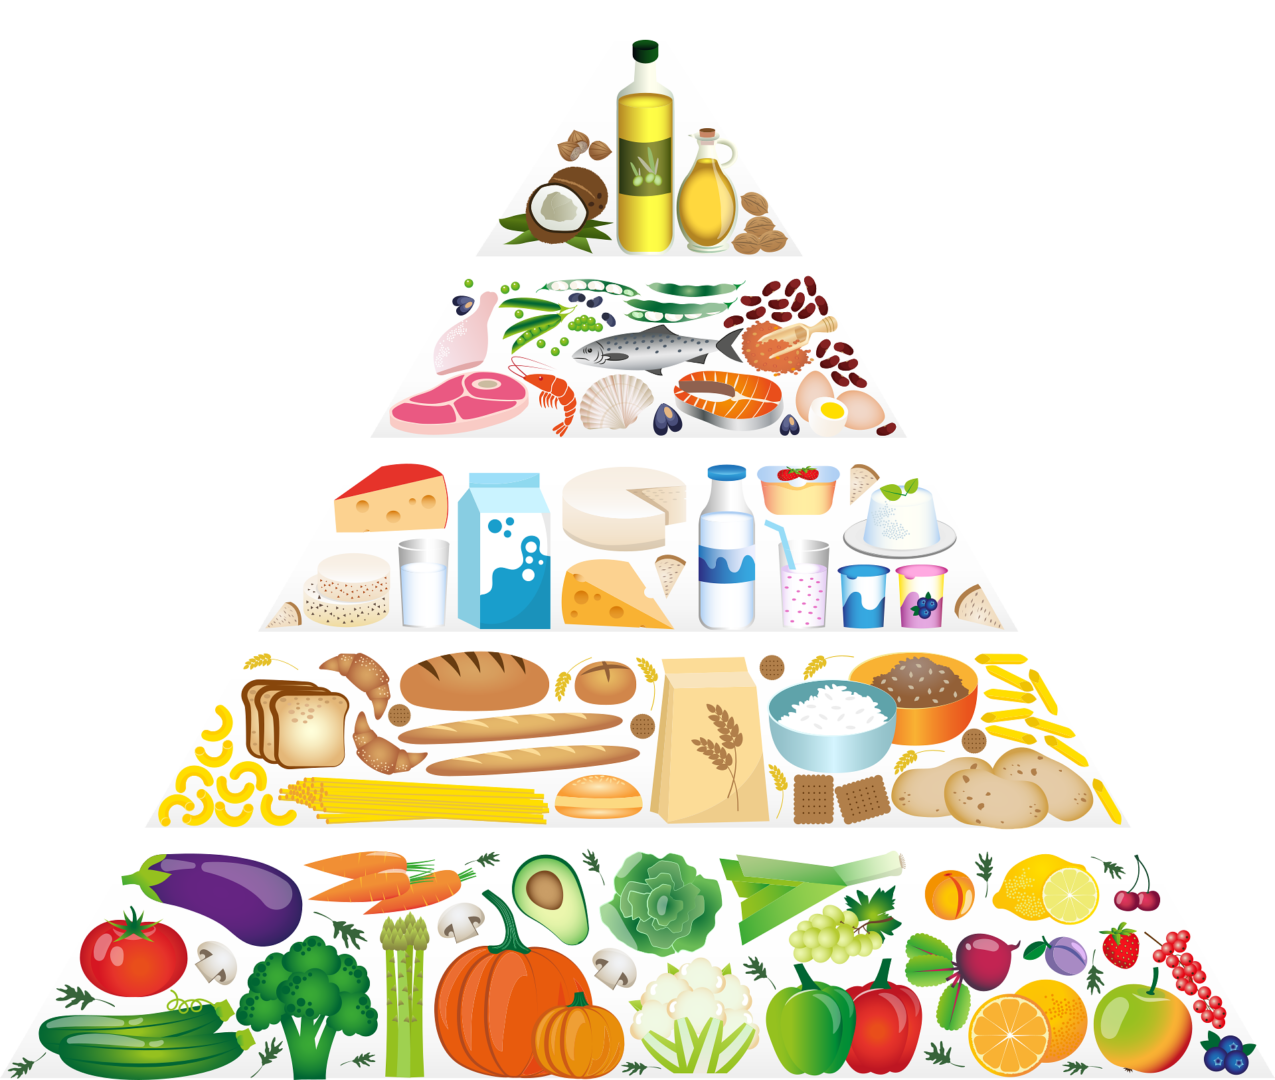 food-pyramid-5329204_1920.png_1696377418